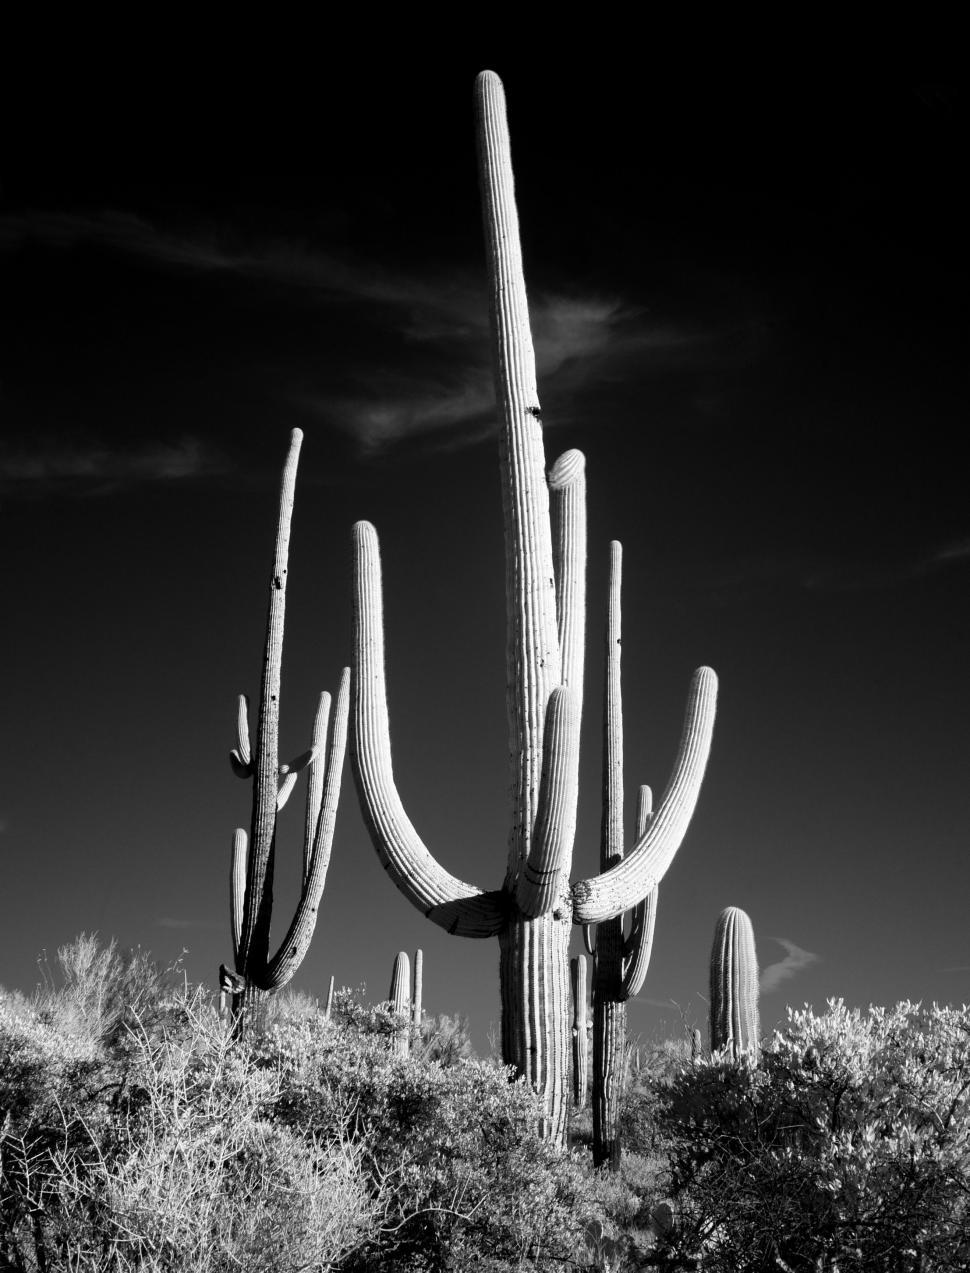 Free Image of Saguaros Cactus - B&W 